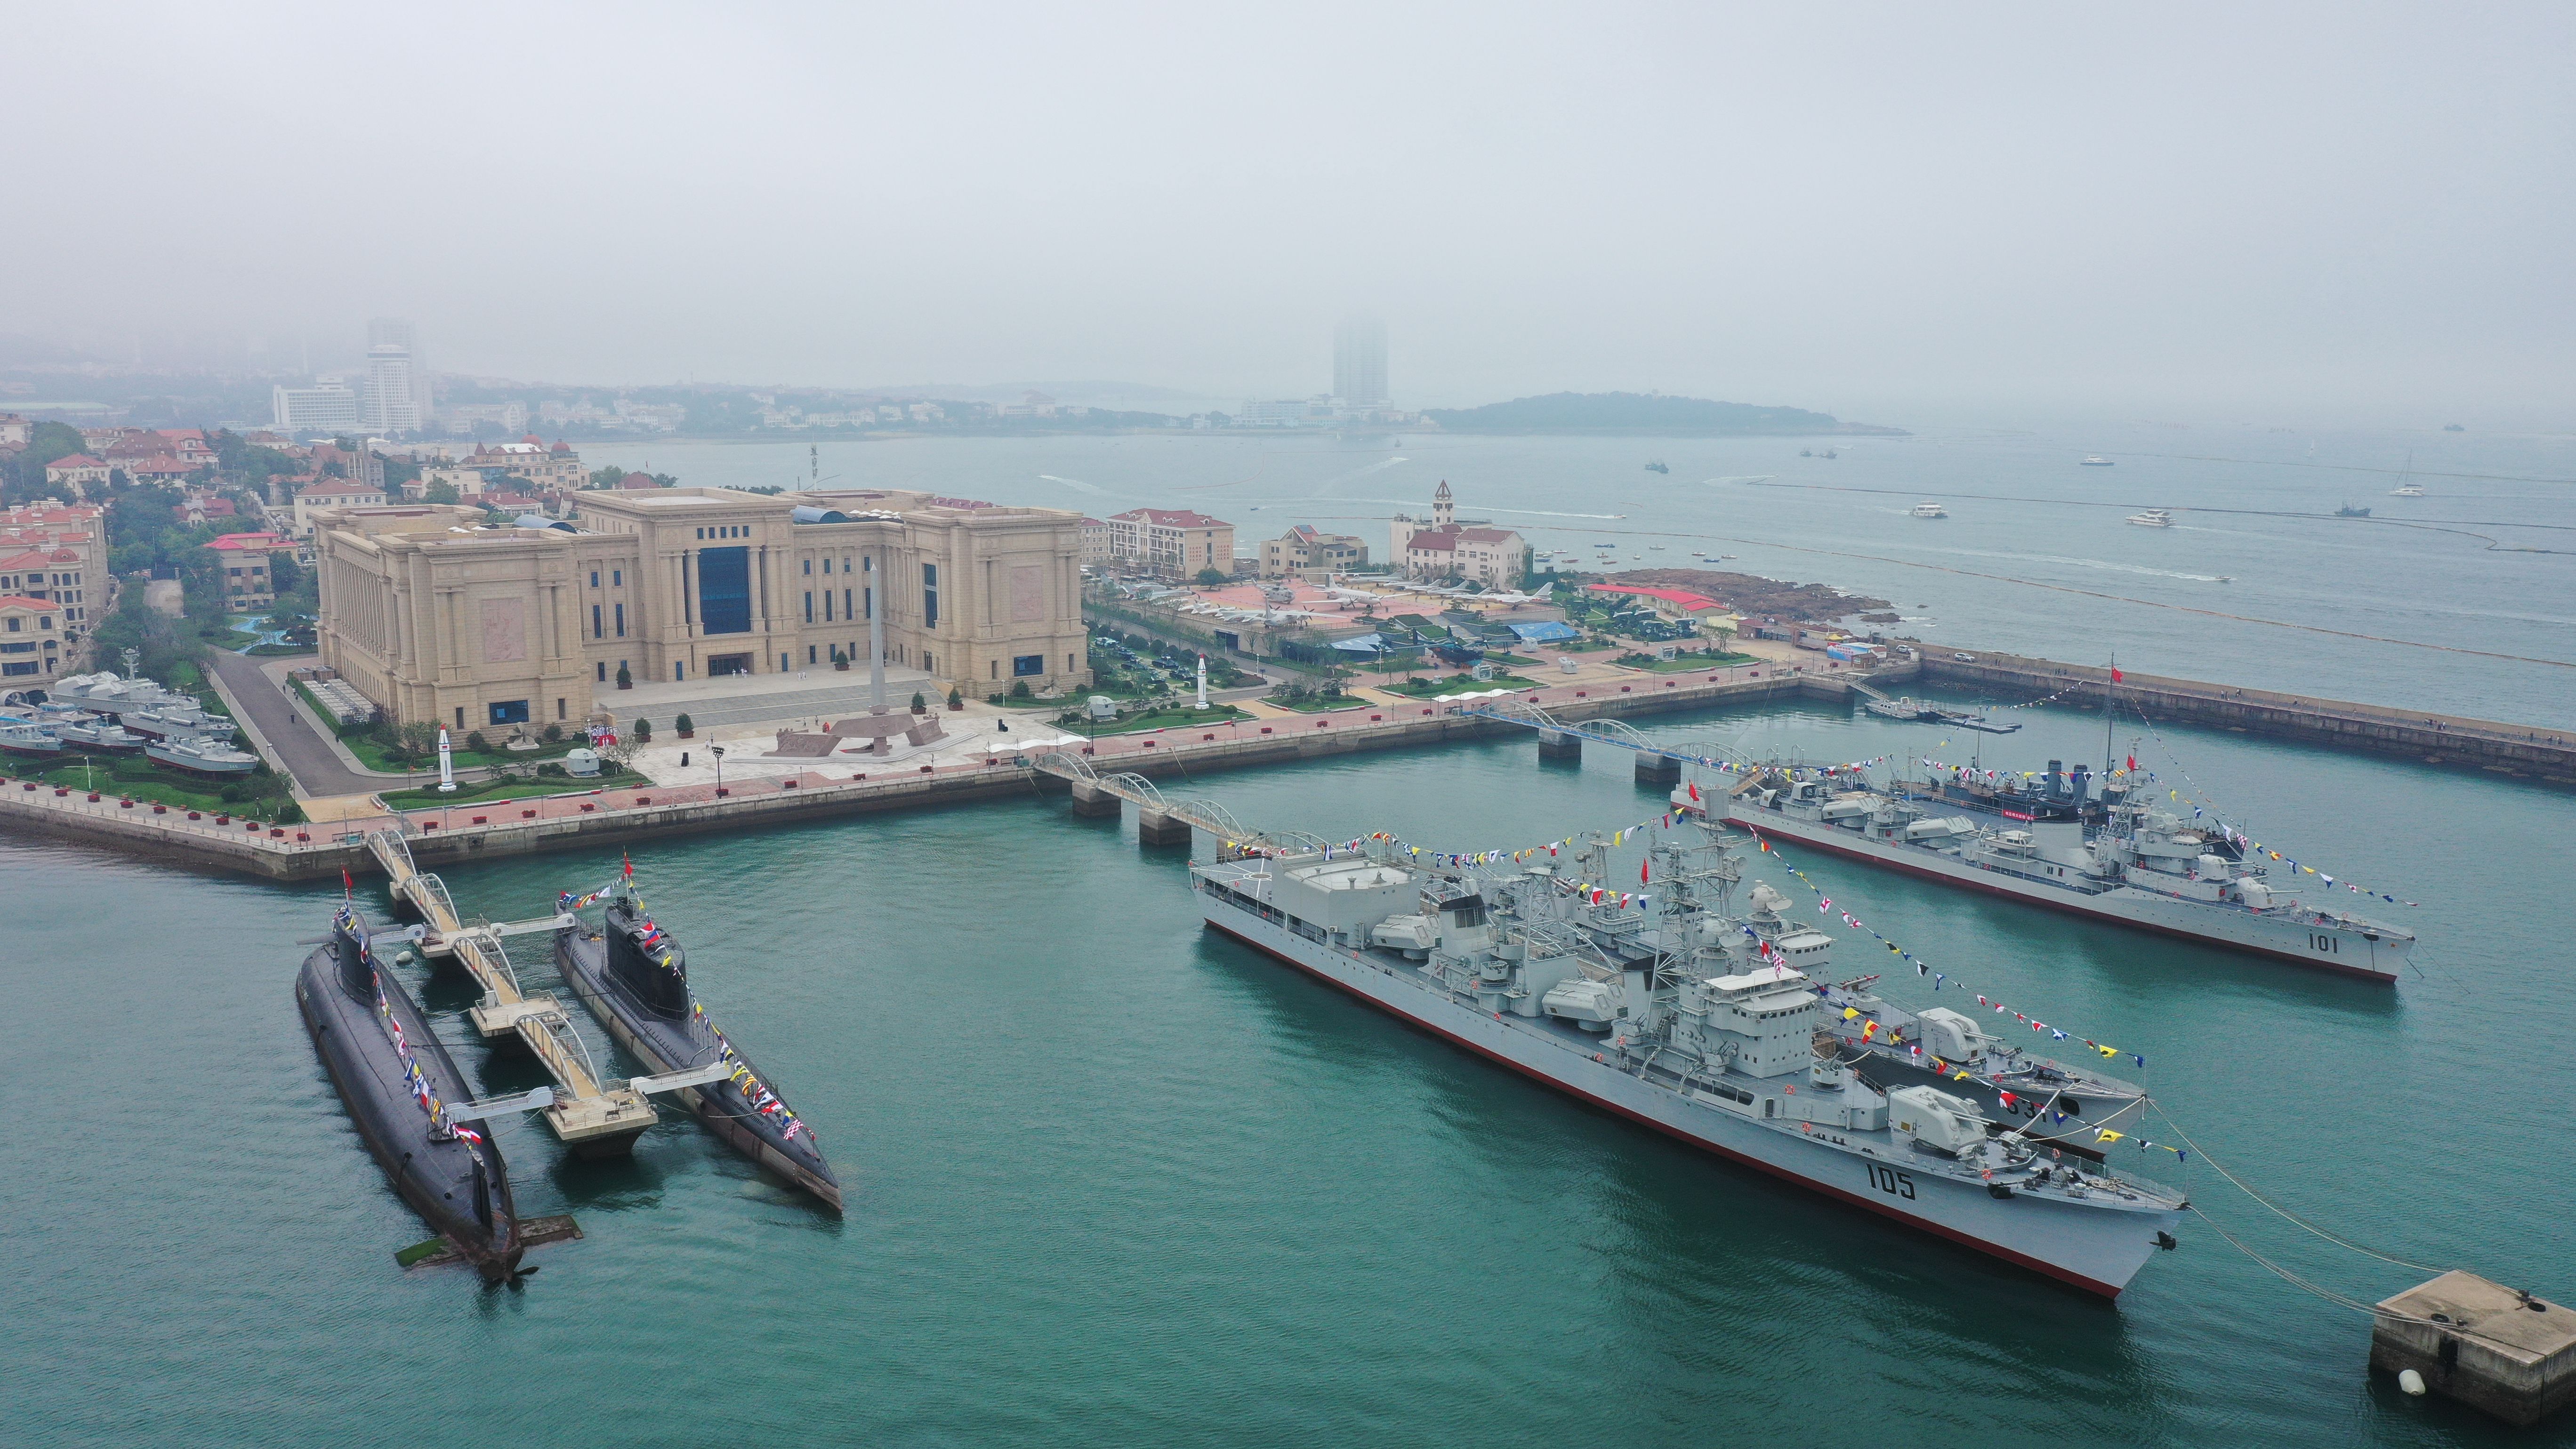 中国海军博物馆青岛图片